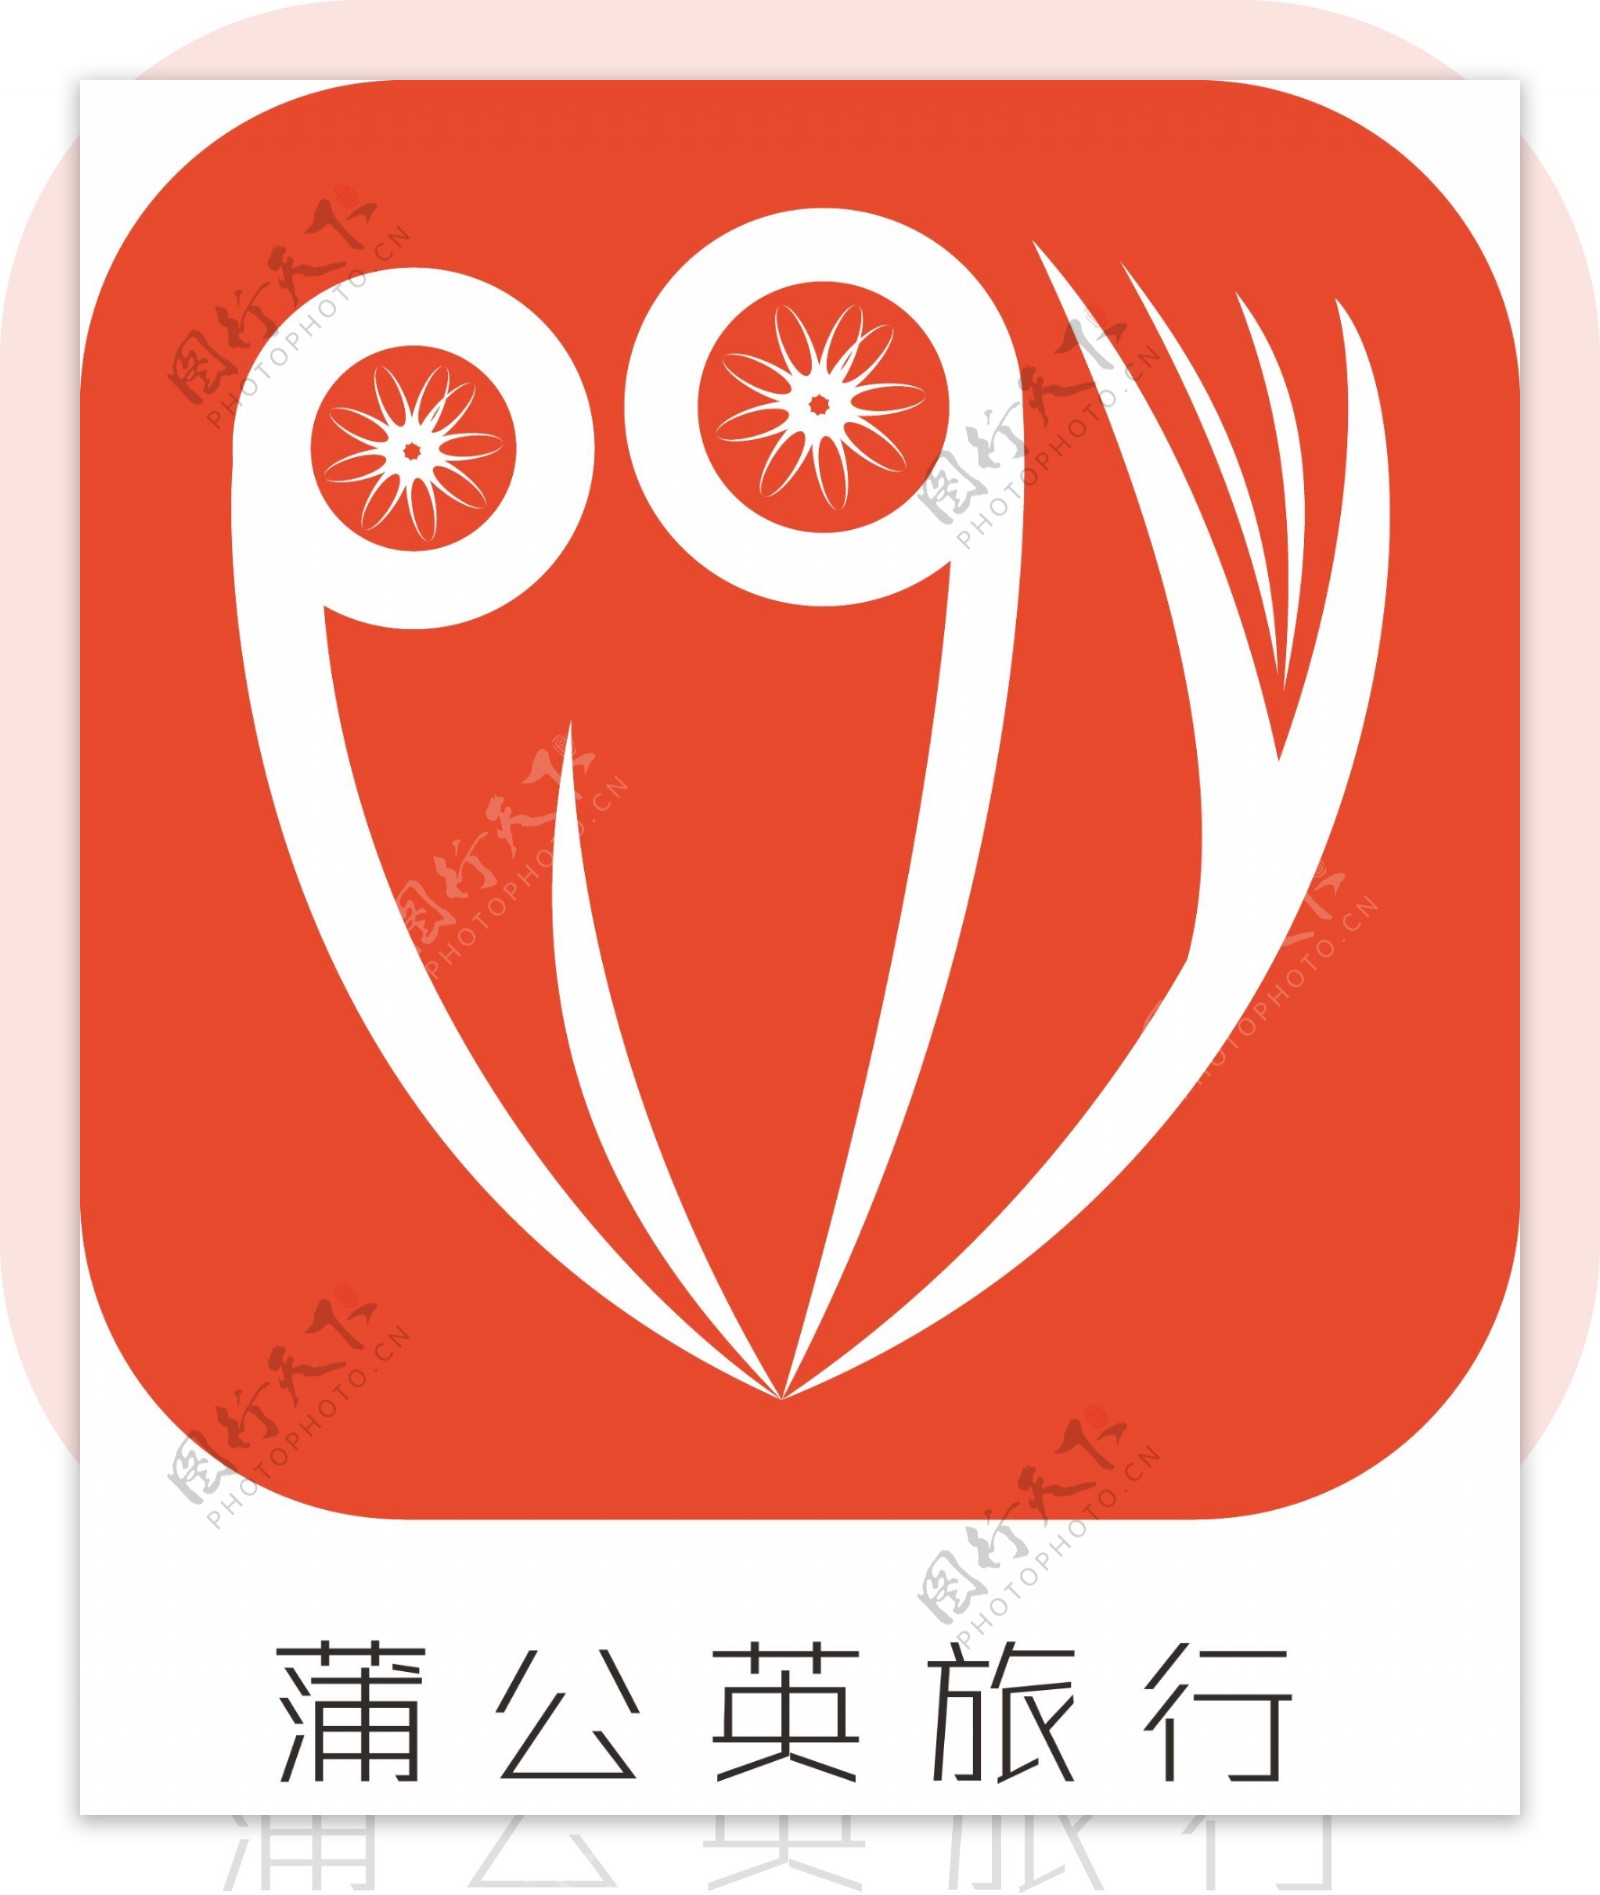 蒲公英旅行图标logo设计